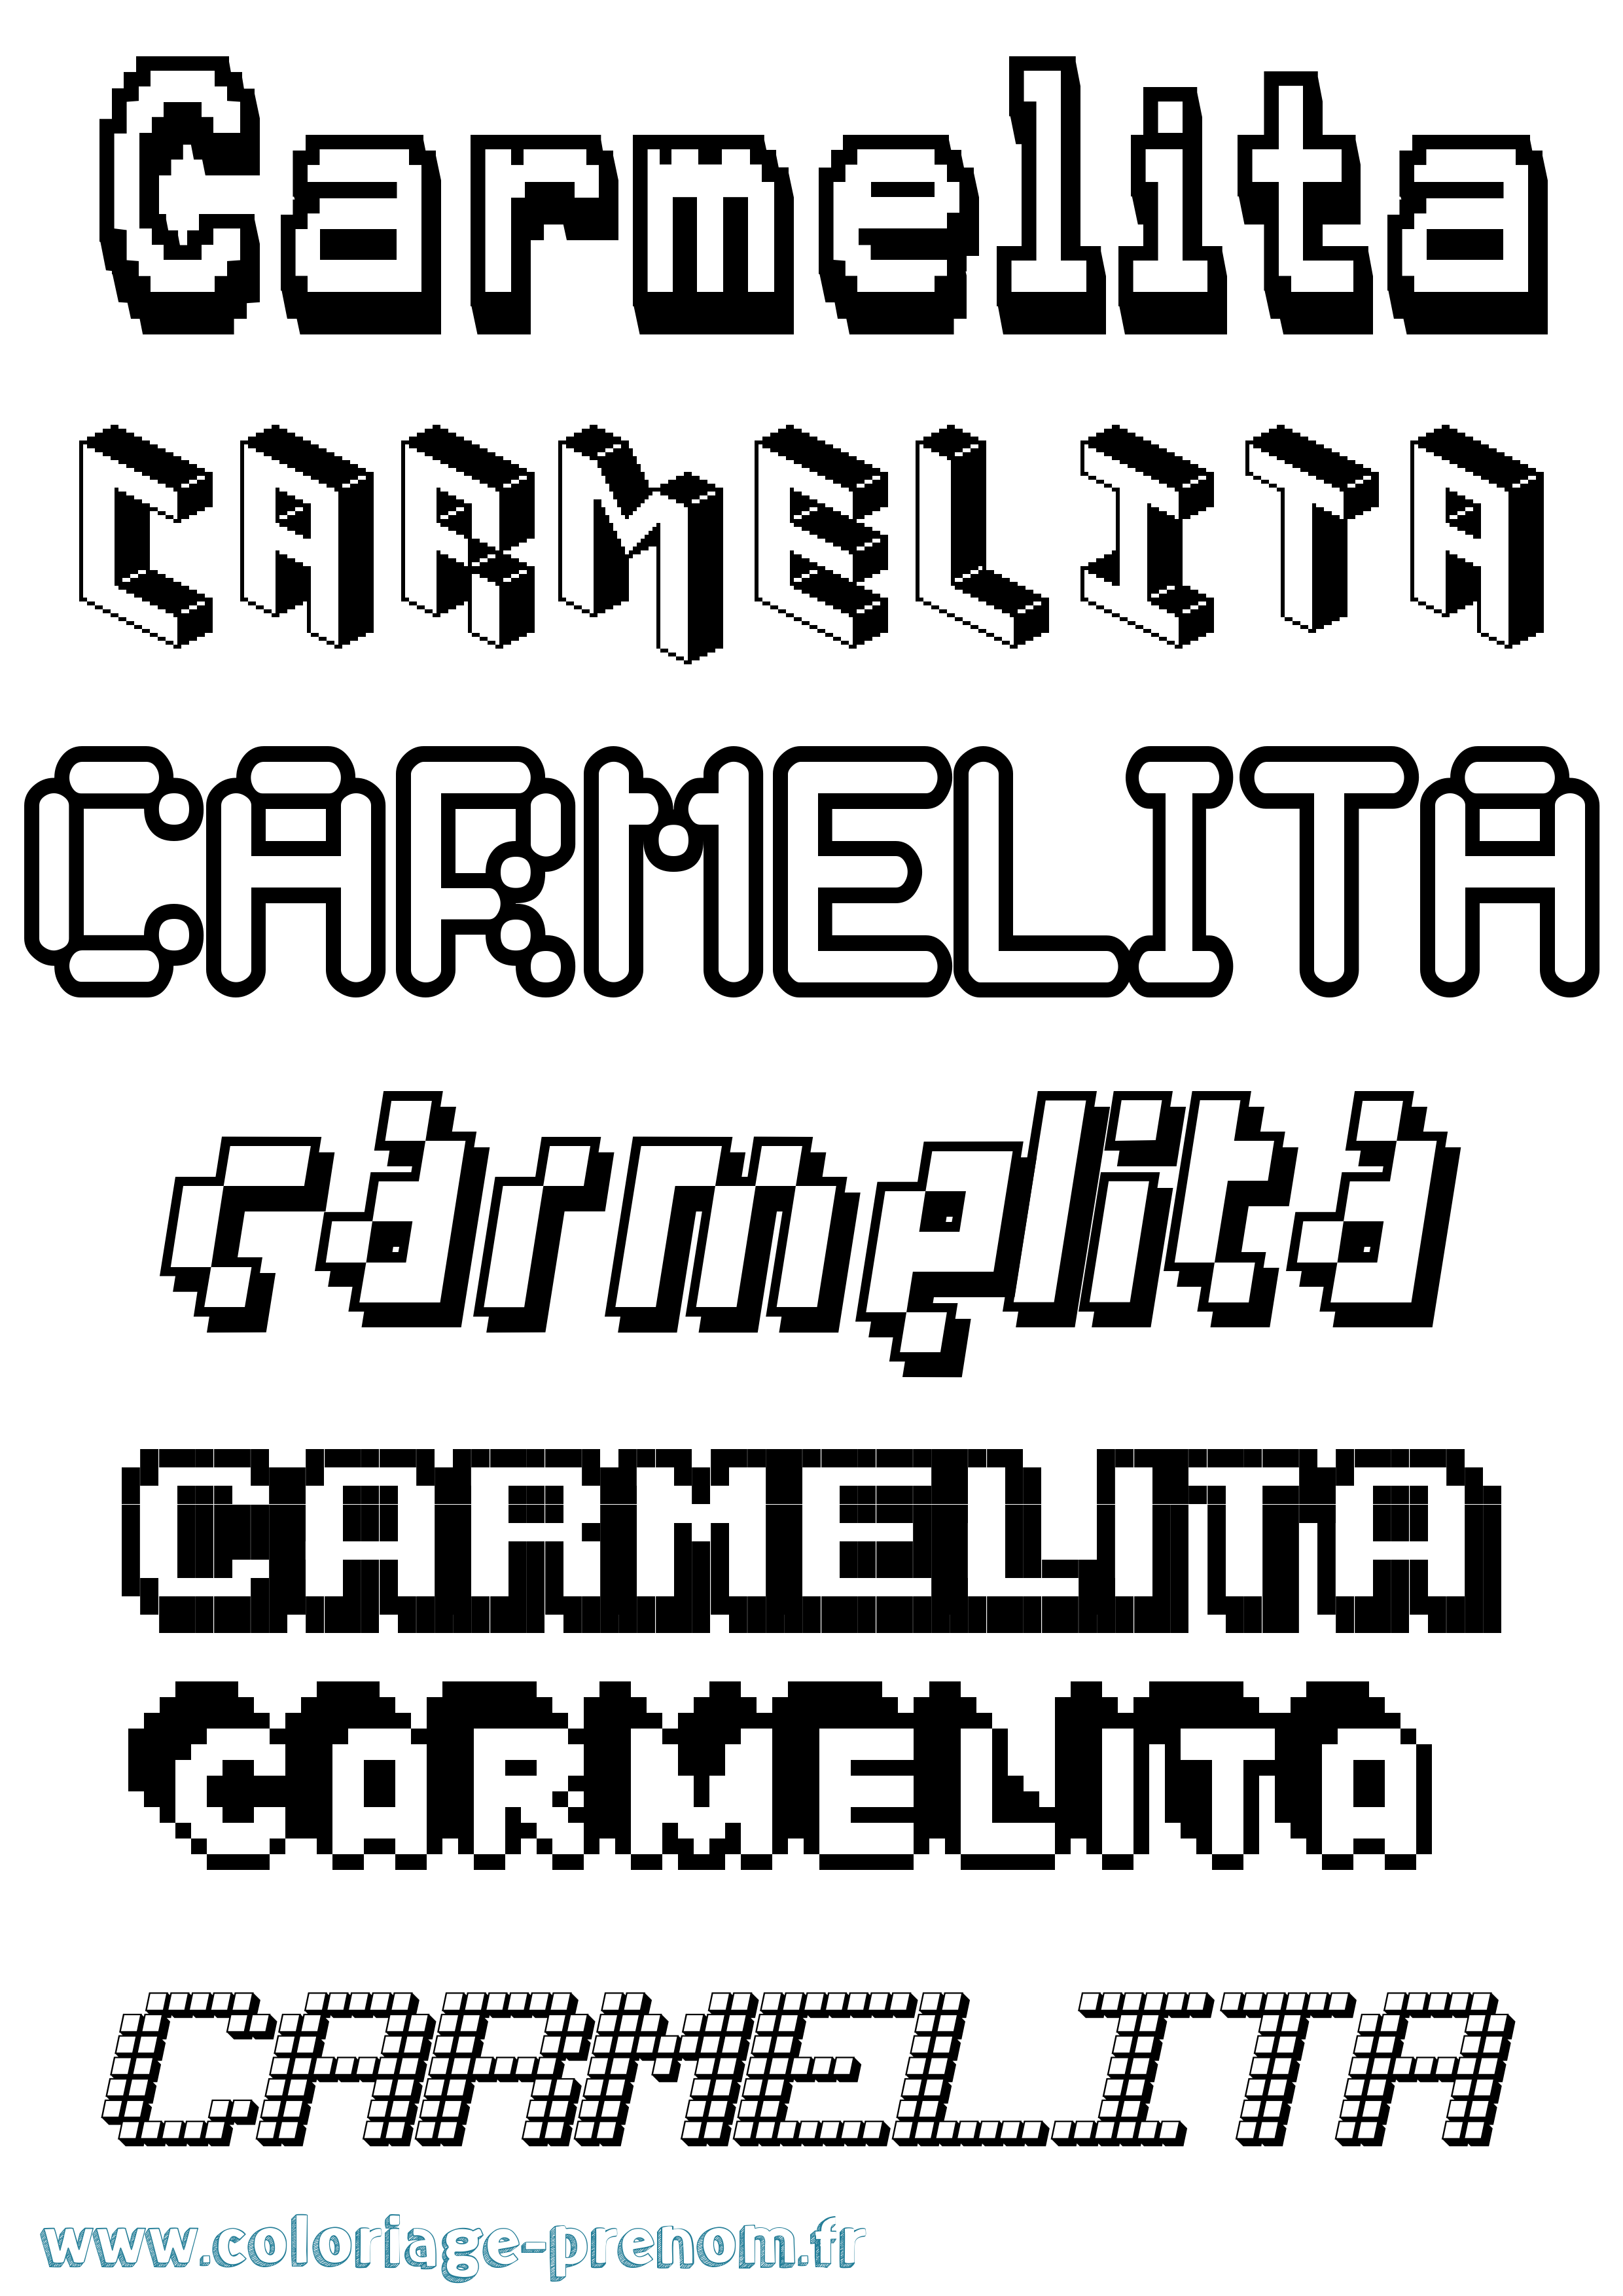 Coloriage prénom Carmelita Pixel